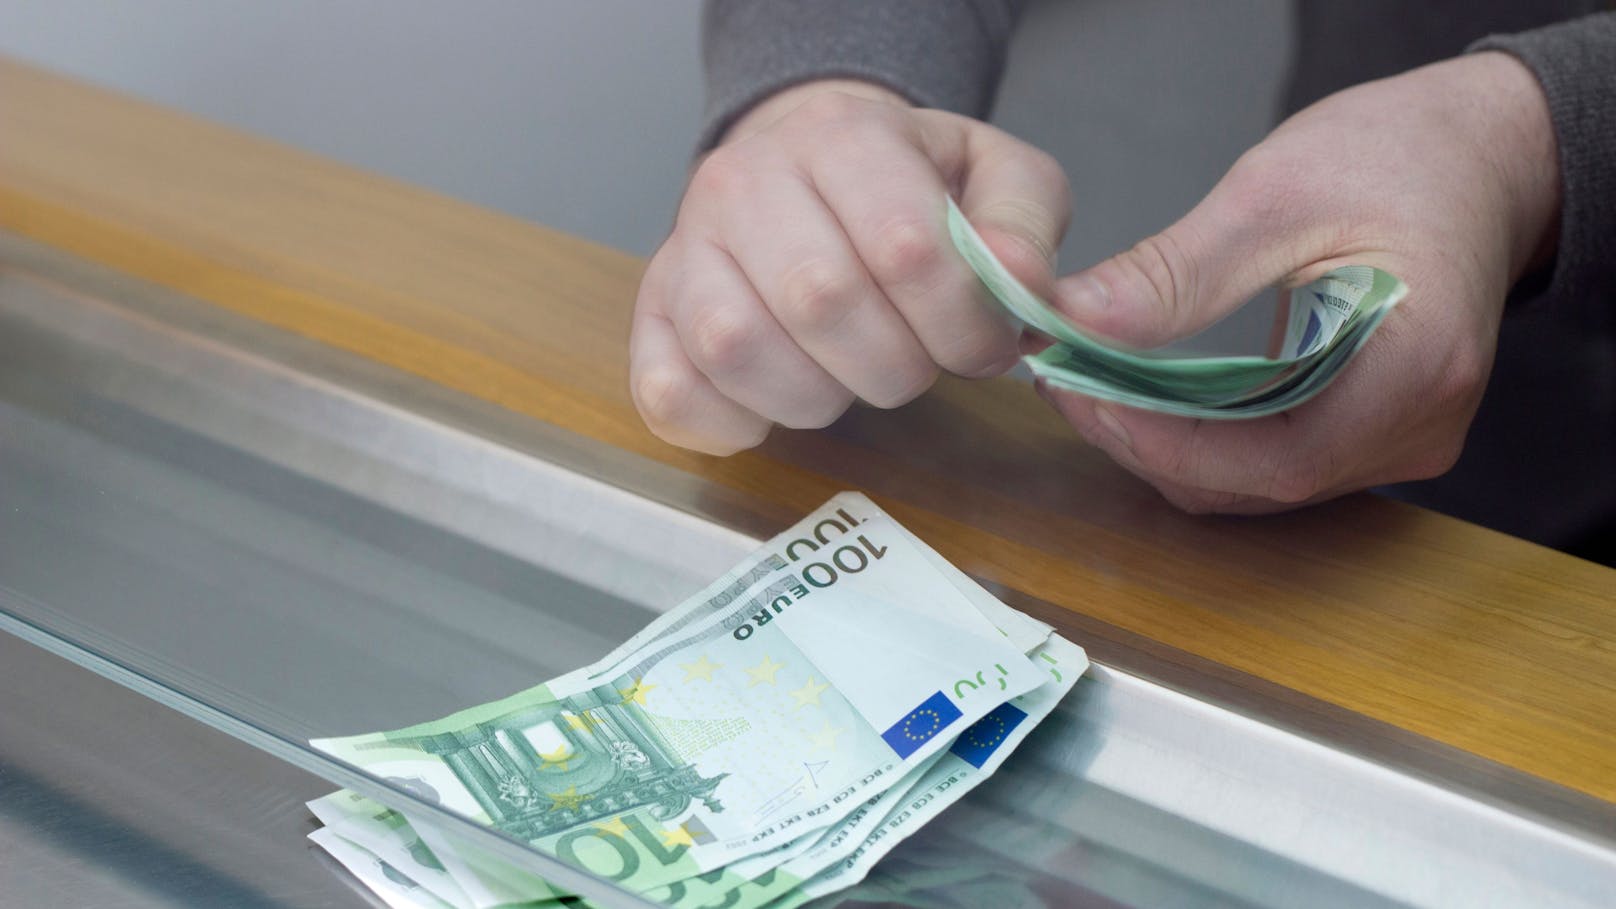 Pensionistin wollte 50.000 € beheben, Bank rief Polizei